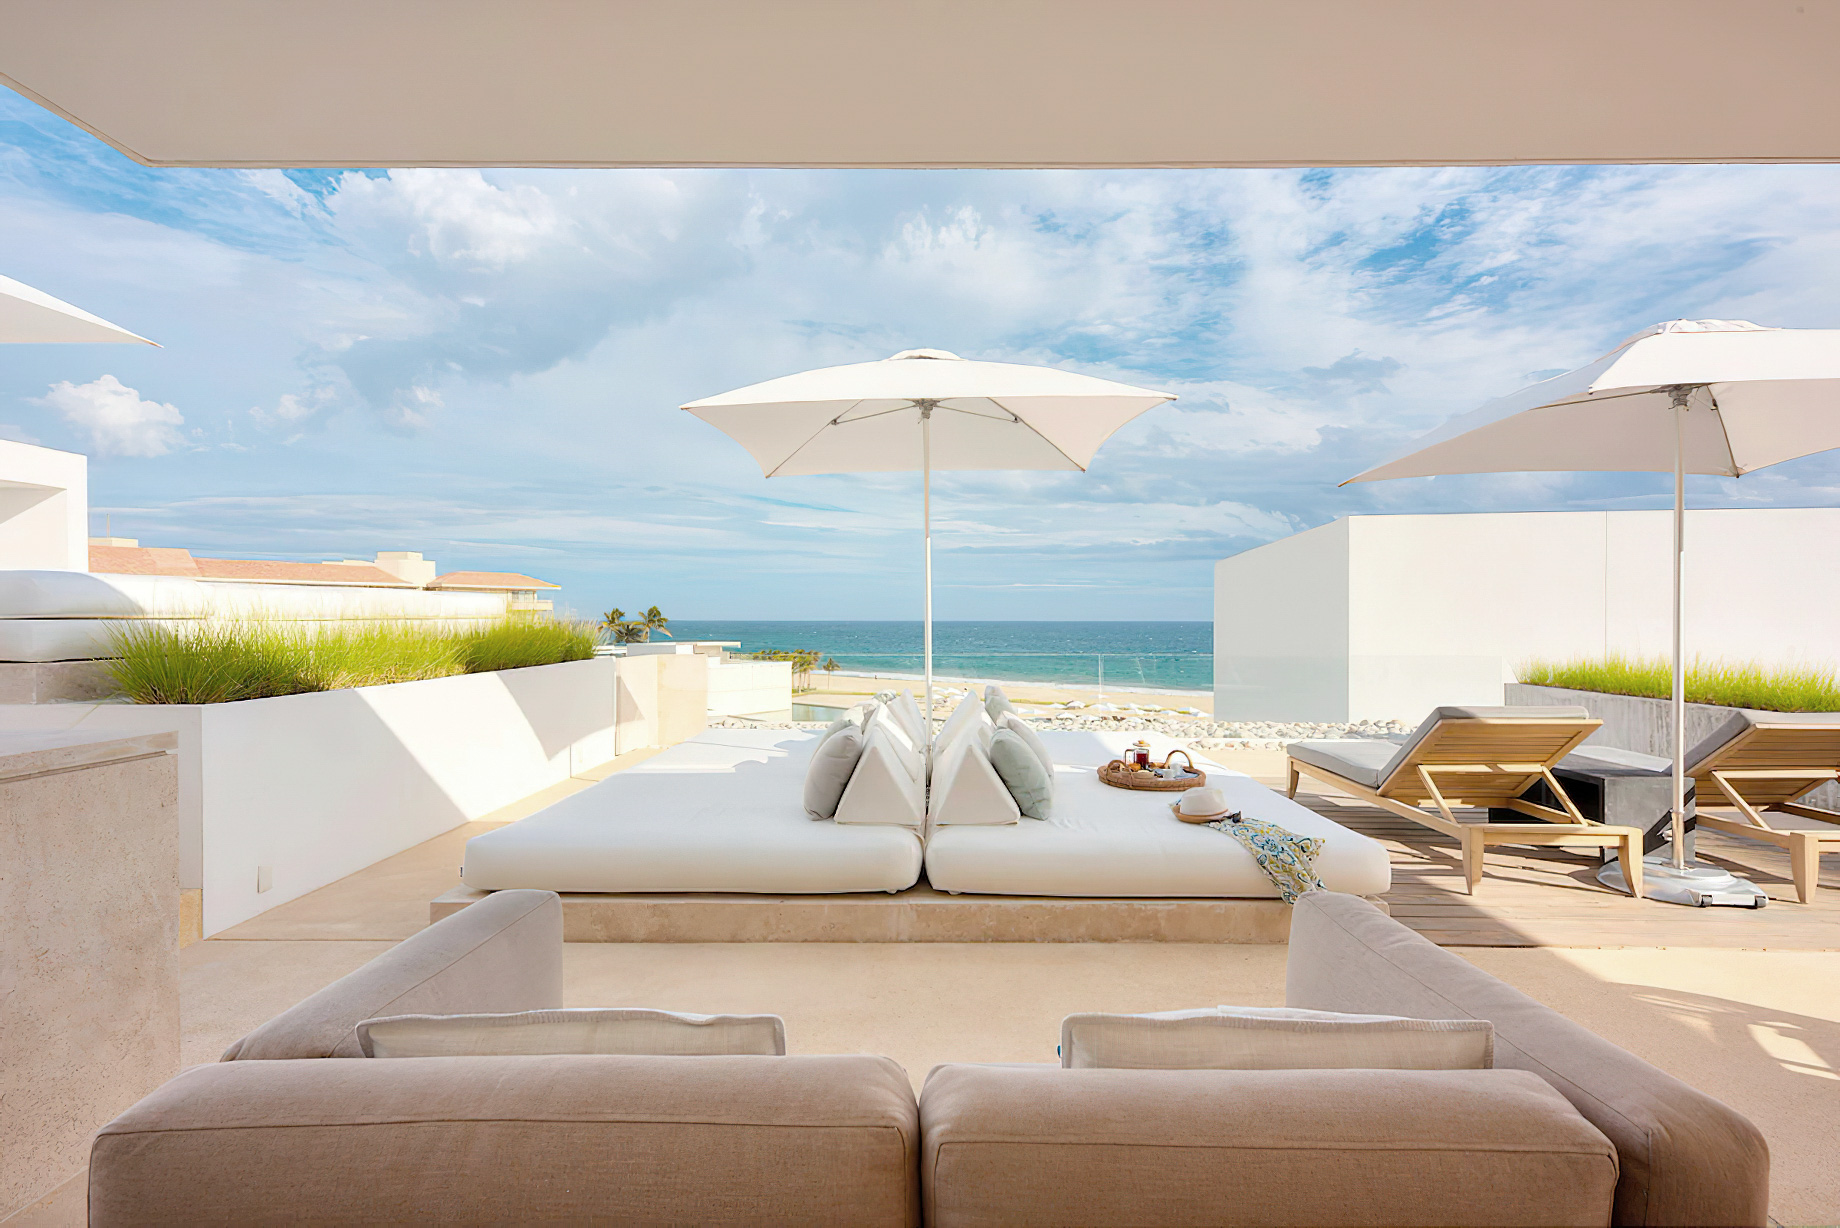 Viceroy Los Cabos Resort – San José del Cabo, Mexico – Four Bedroom Waterside Villa + Nanny Bedroom Patio